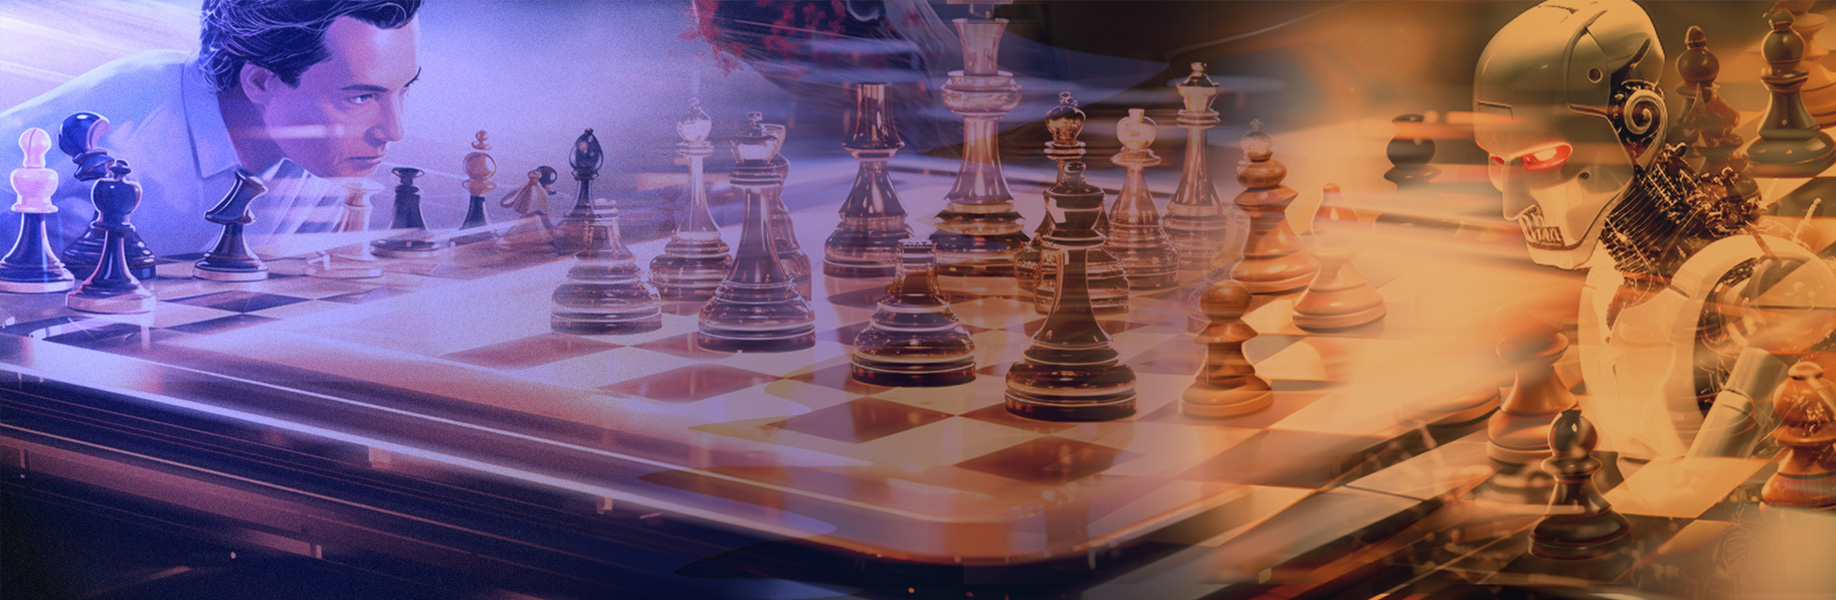 Checkmate Continuum: A evolução dos motores de xadrez de IA